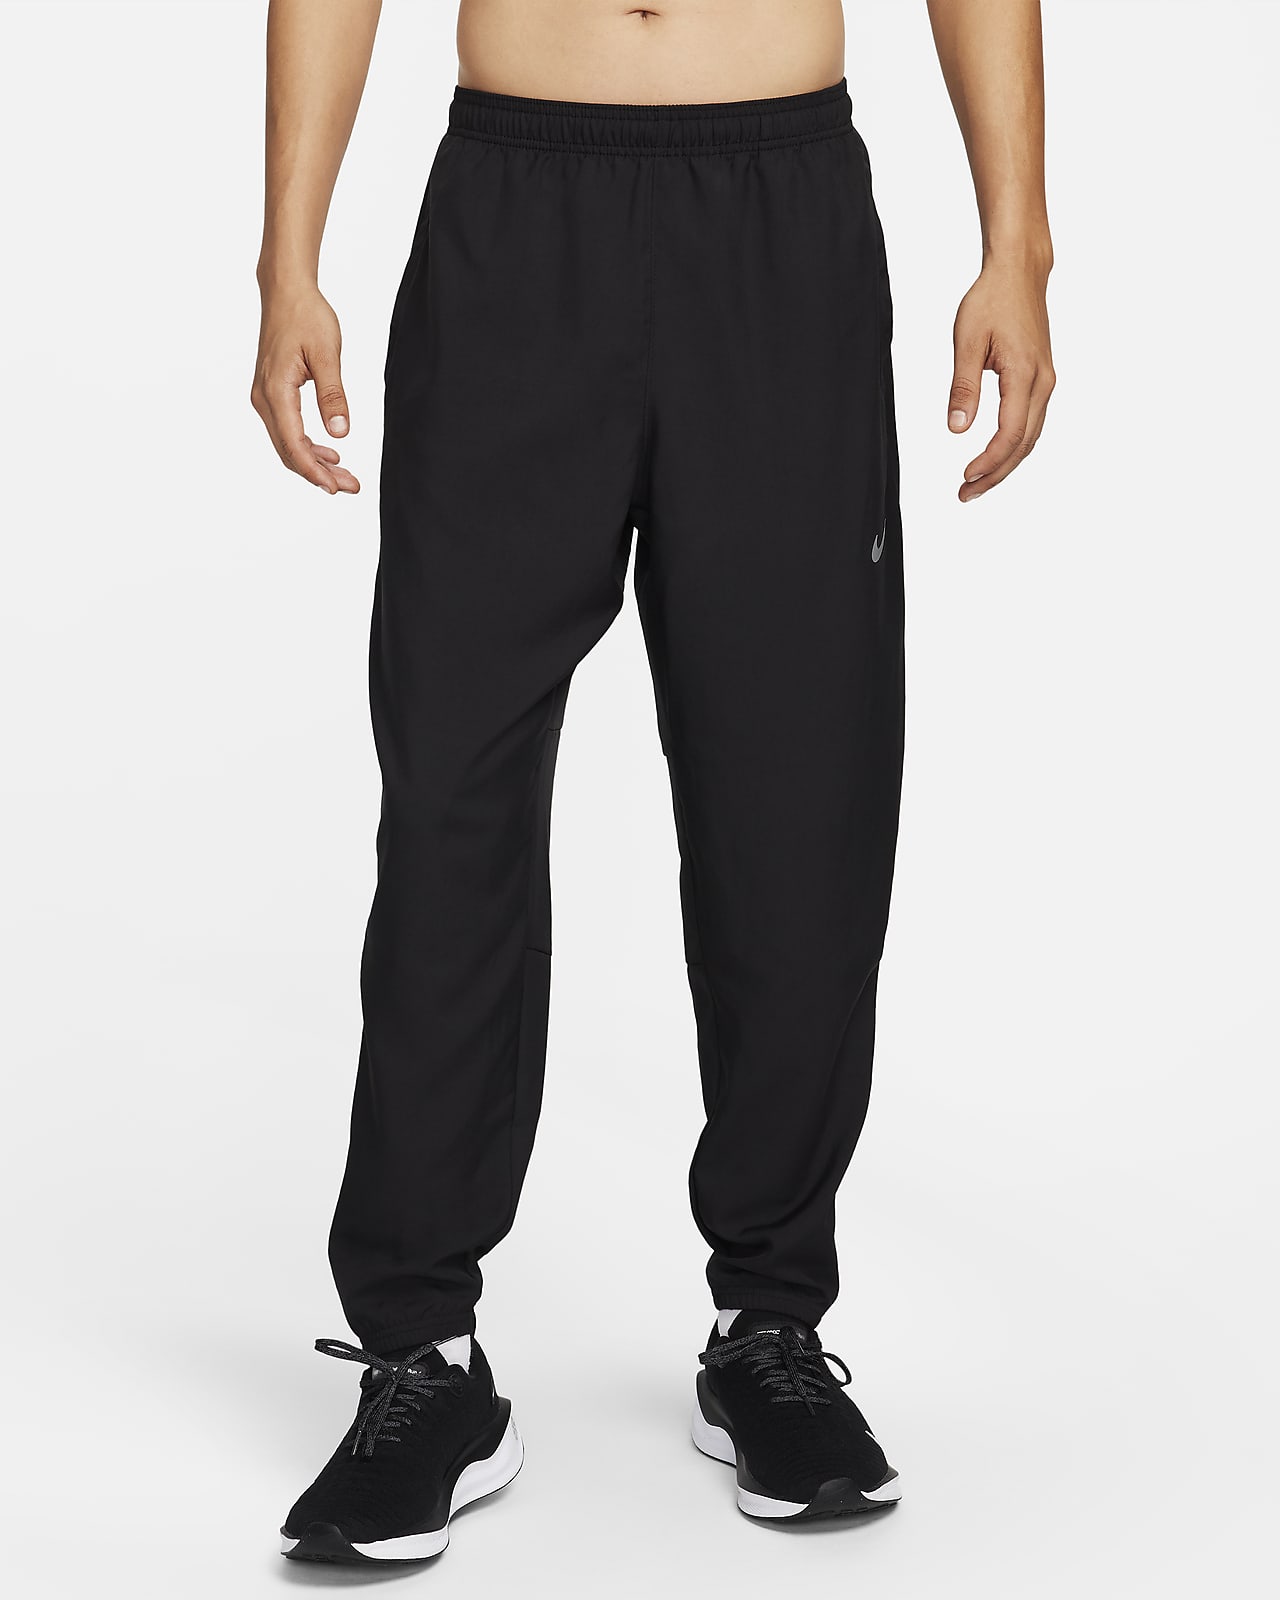 Nike Swift Men’s Running Pants BV4809-451- Size Large